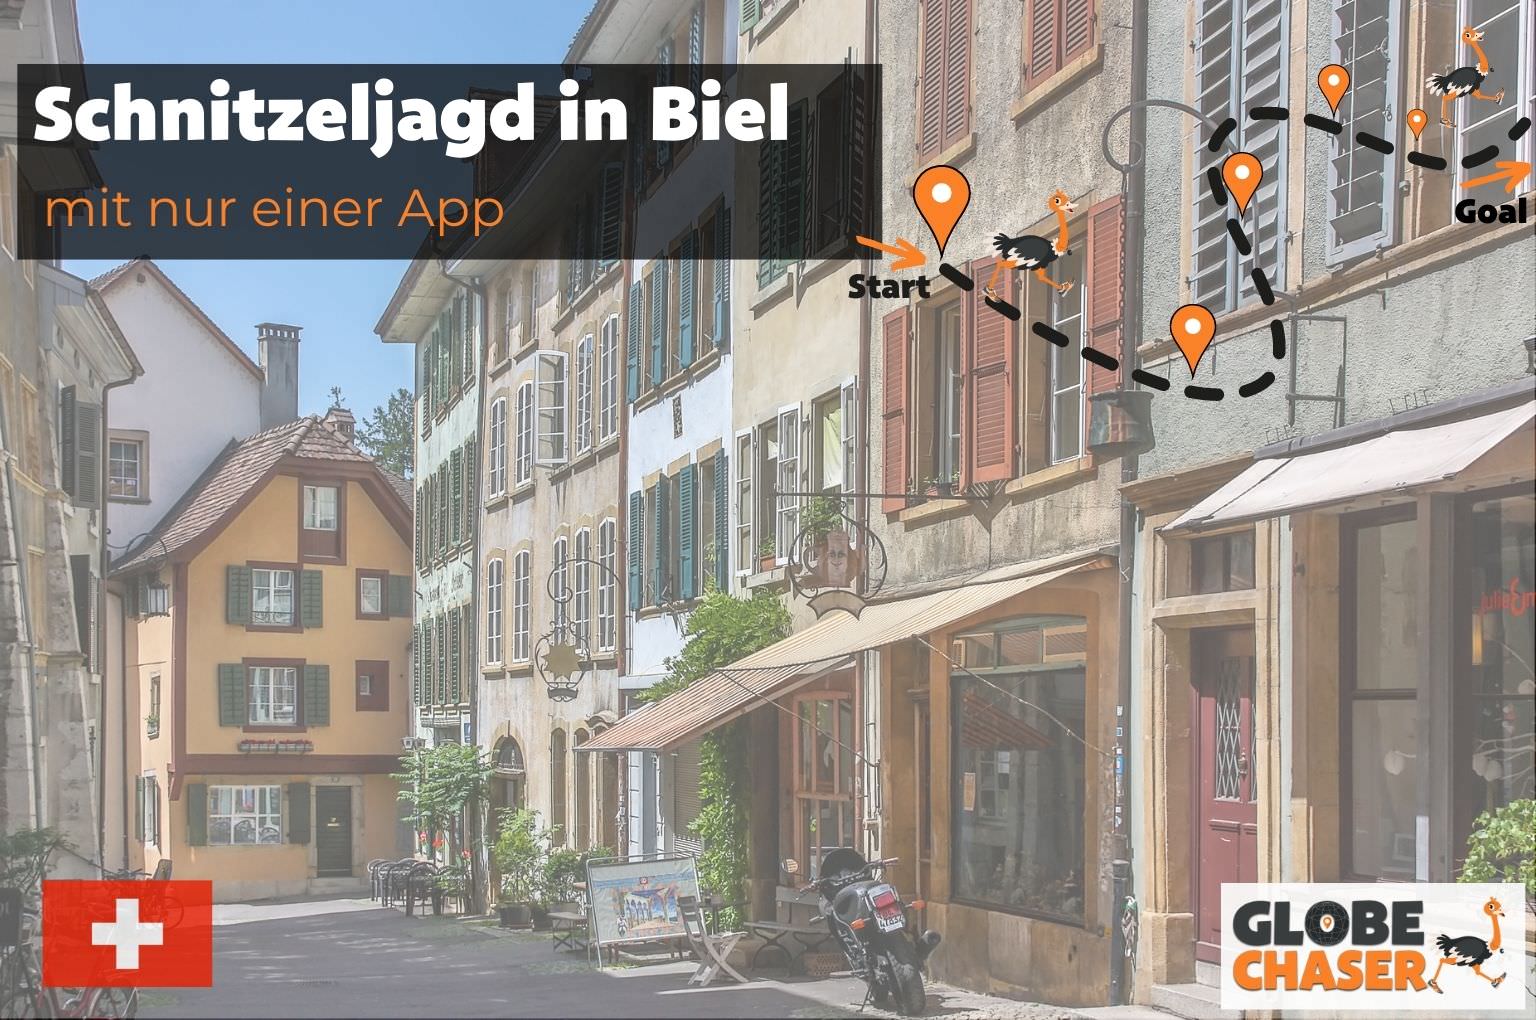 Schnitzeljagd in Biel mit App - Globe Chaser Erlebnisse Schweiz